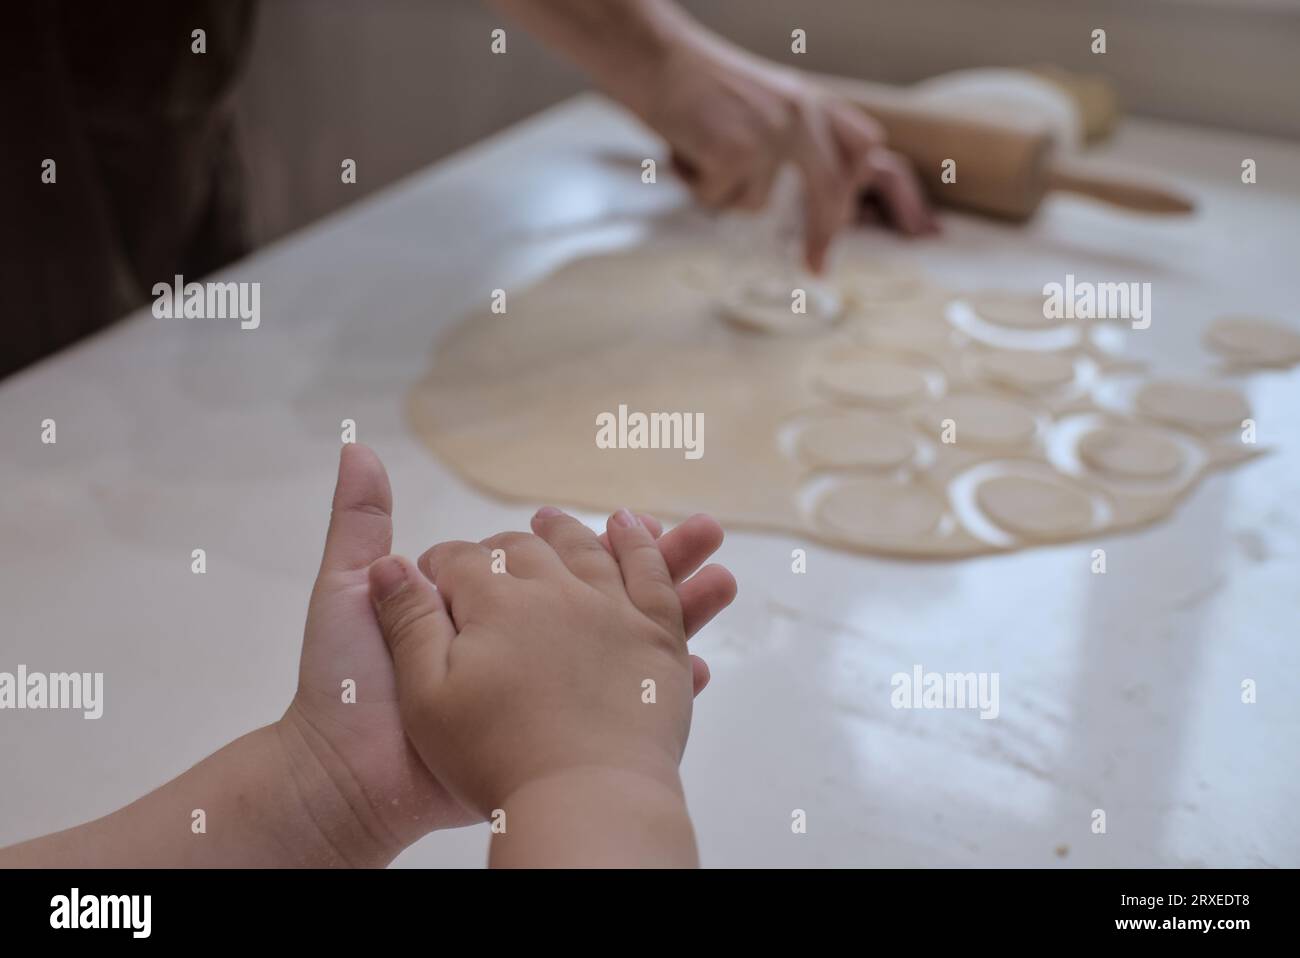 Kleine Kinderhände halten Teig, während die Erwachsene Frau im Hintergrund Essen zubereitet. Stockfoto